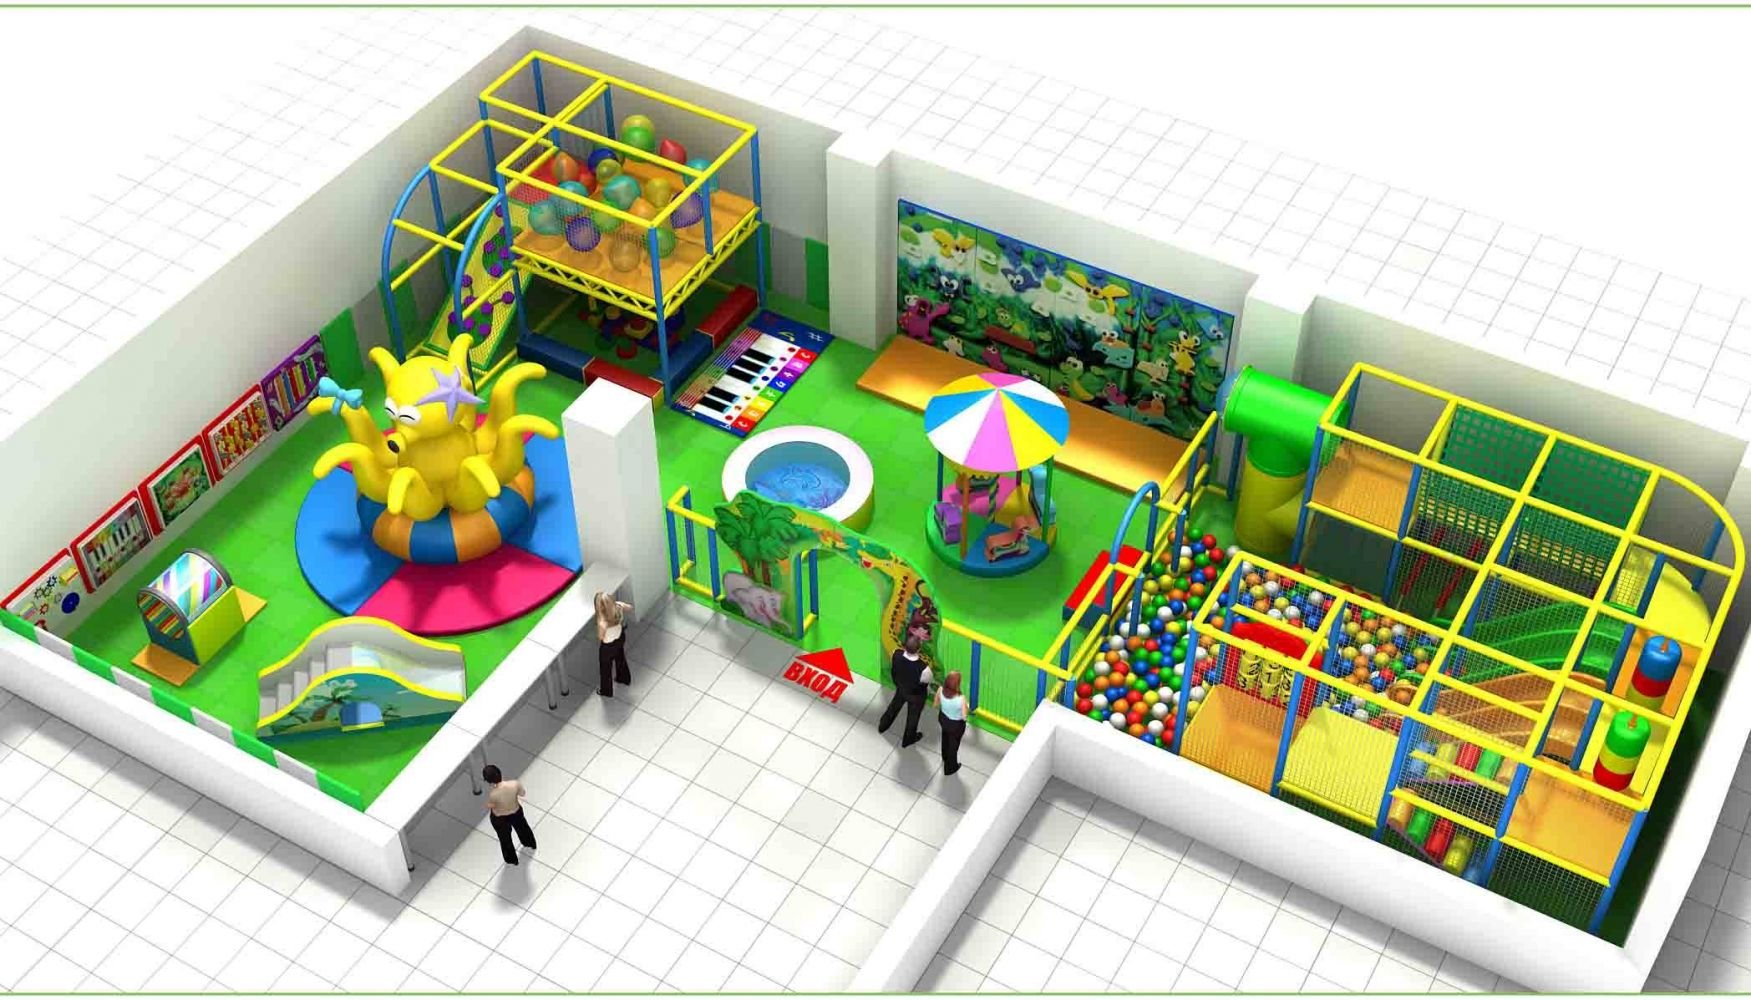 Проект развлечение. Игровая комната. Детская игровая комната. Оборудование для детской игровой комнаты. Детский развлекательный центр план.